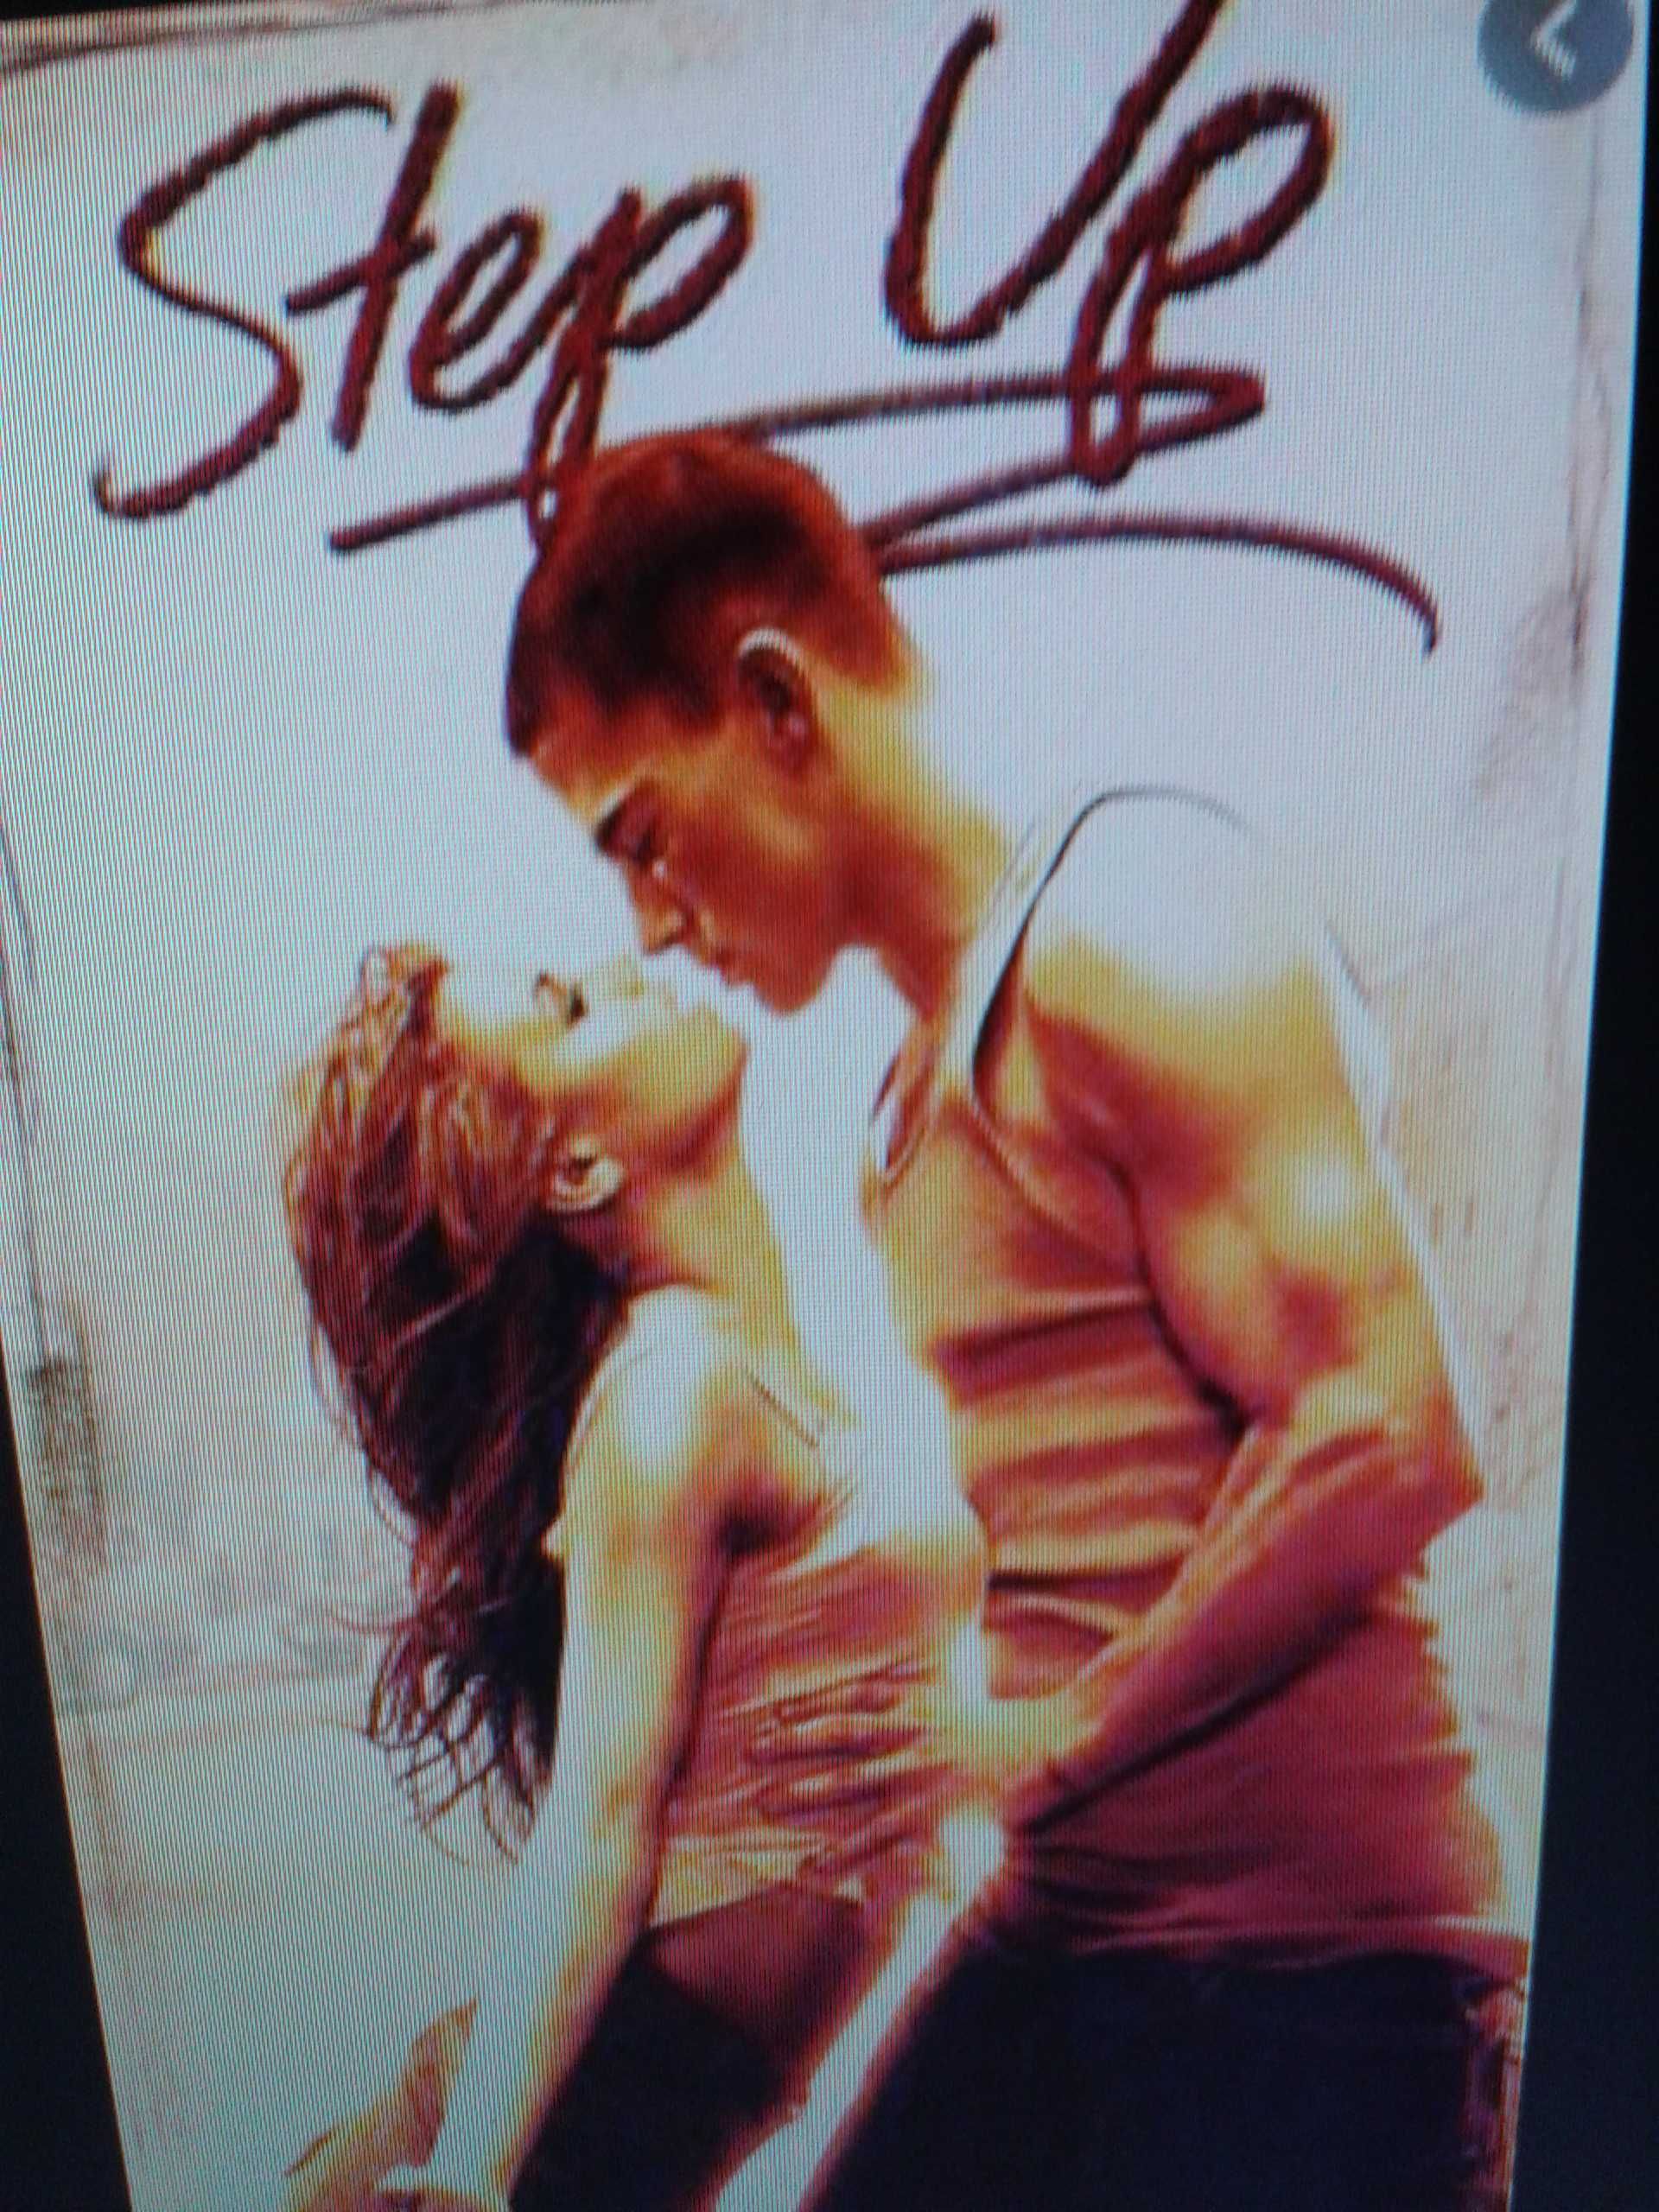 STEP UP taniec zmysłów - ciekawy film z dobrą muzyką i układami tańca